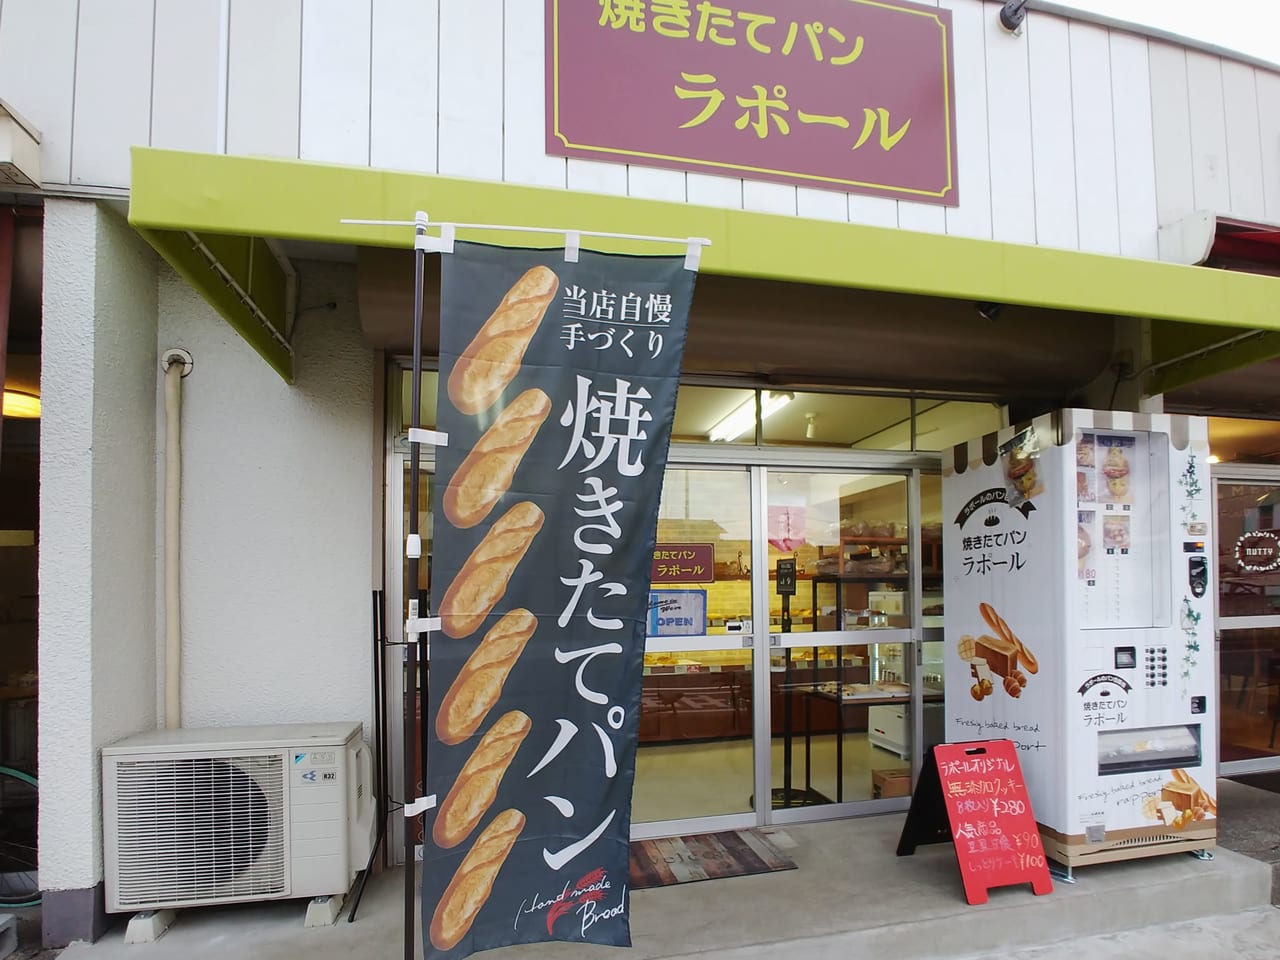 大和田一丁目にあるパン屋さん「ベーカリー ラ・ポール」